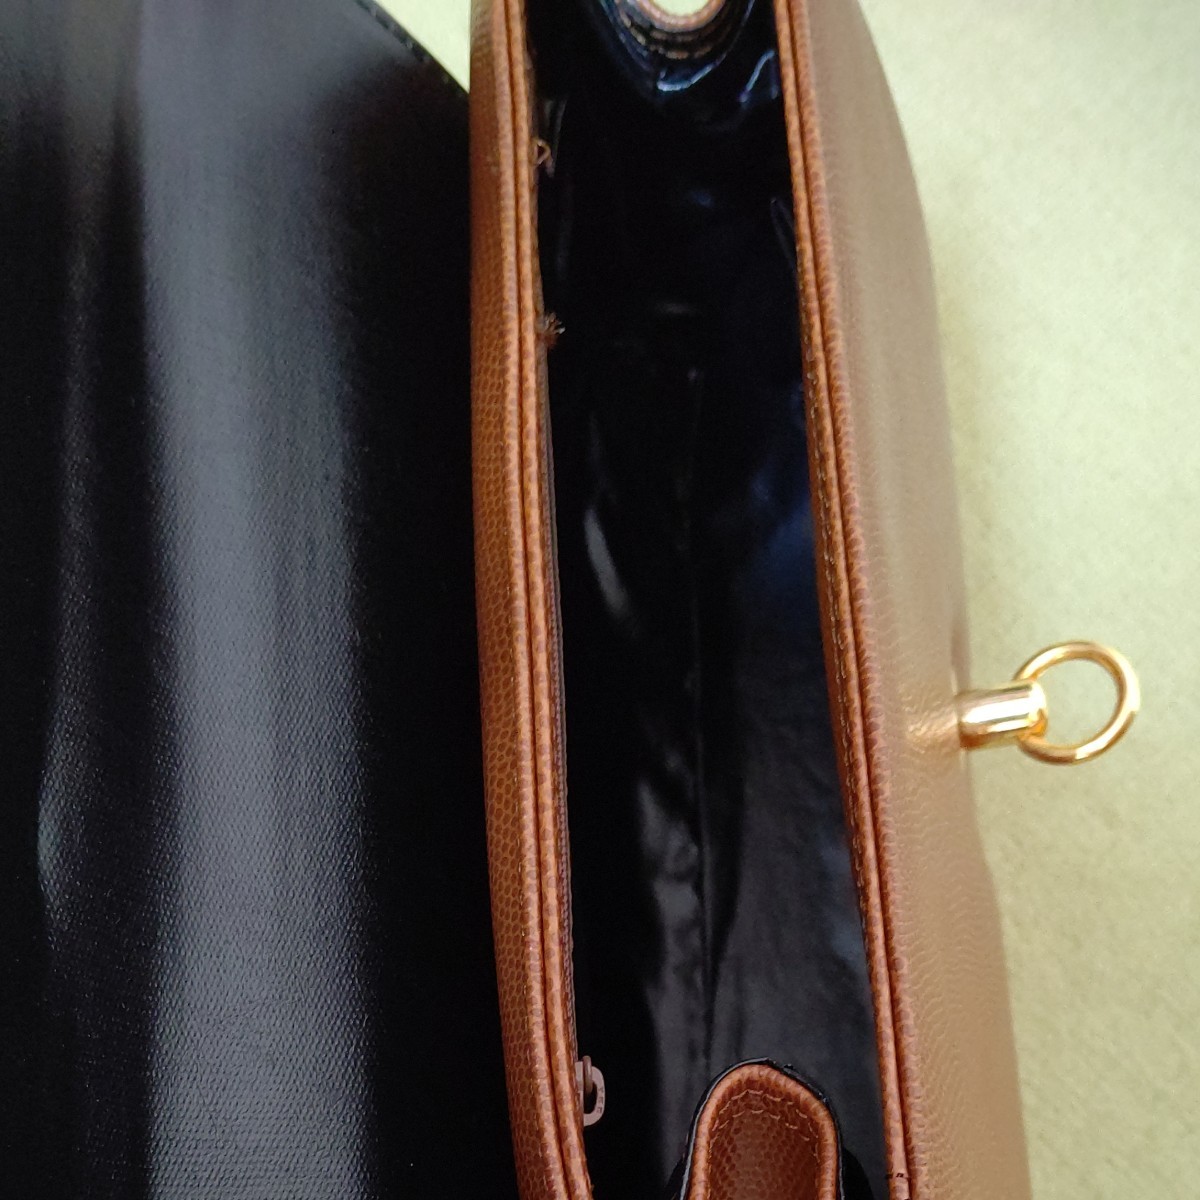  日本製ハンドバッグ ショルダーバッグ 茶色